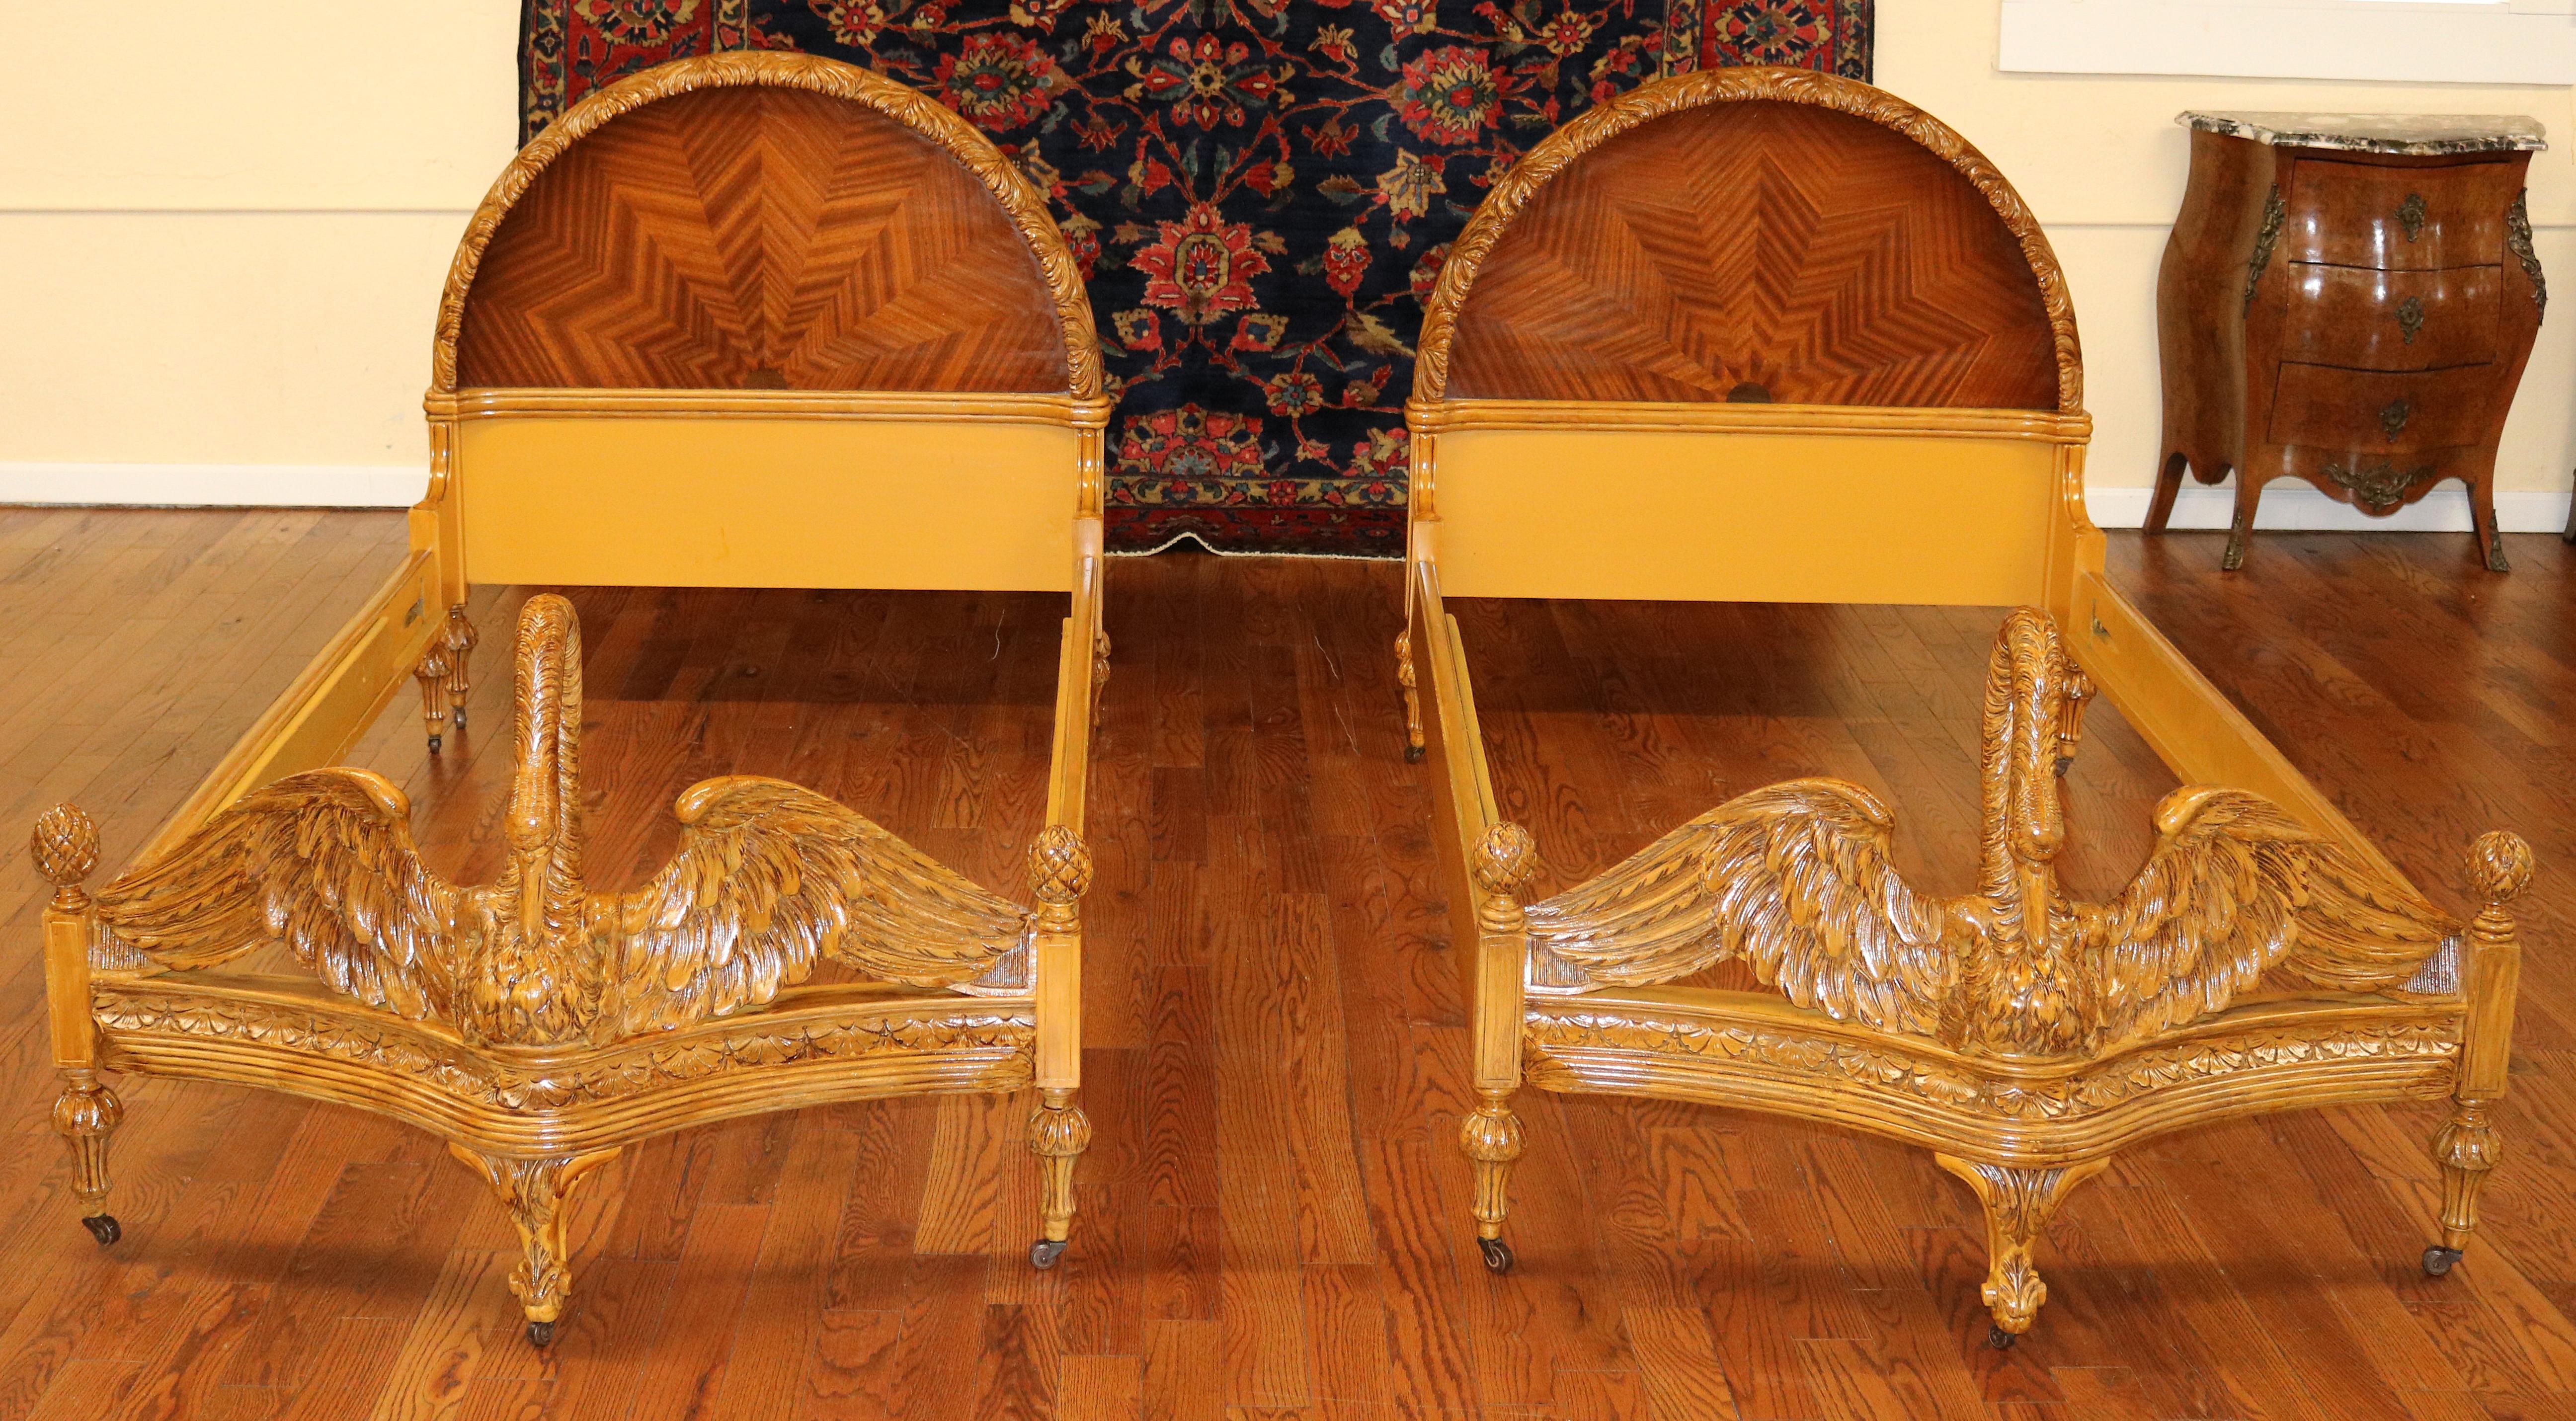 Paire de lits jumeaux en bois de roi, sculptés, décorés et incrustés de Swan Circa 1920

Dimensions : 44